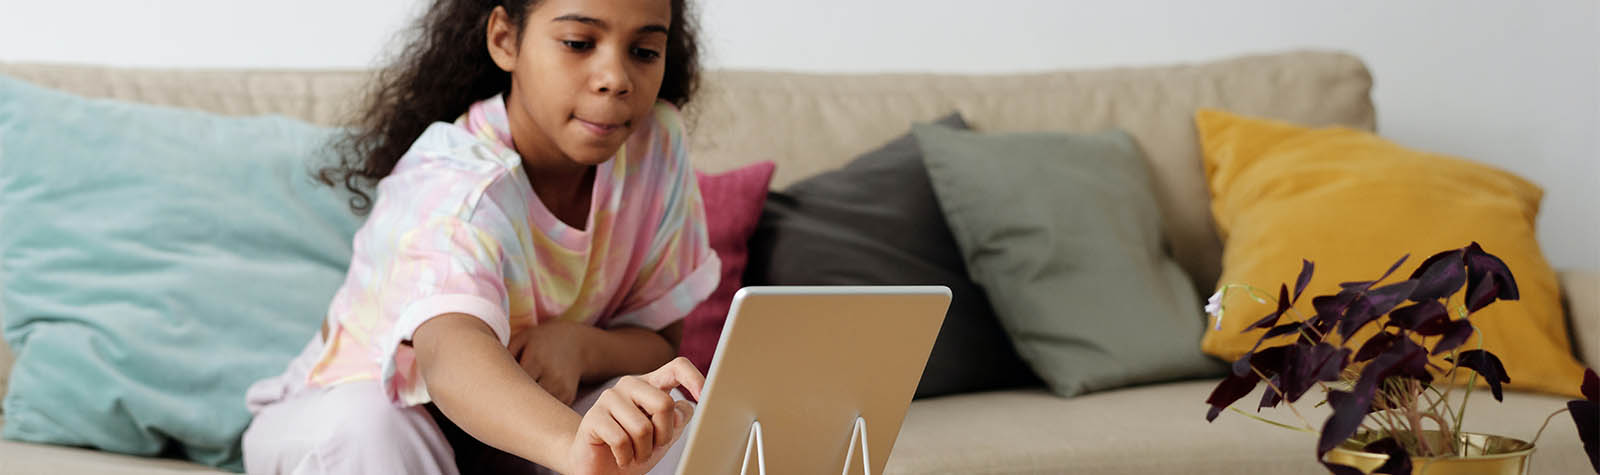 Google neemt maatregelen om online veiligheid van kinderen te vergroten